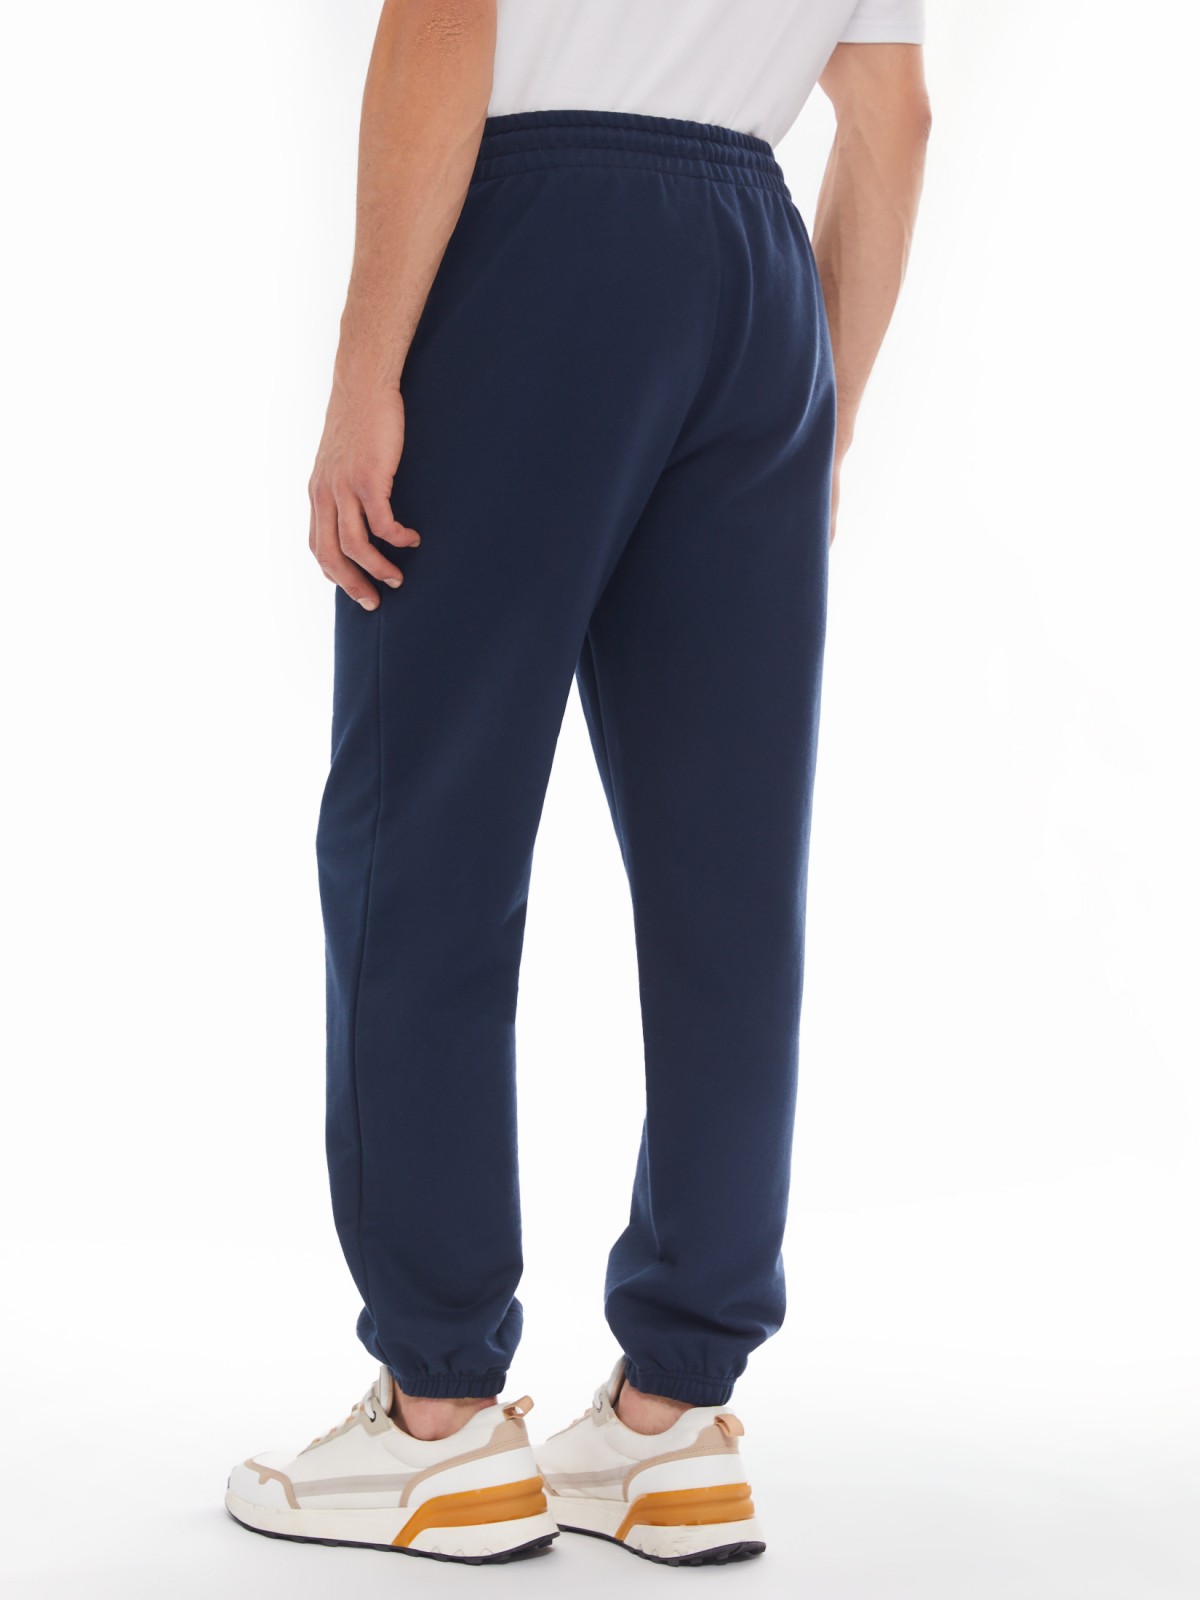 Трикотажные брюки-джоггеры в спортивном стиле zolla 014137660042, цвет синий, размер S - фото 6